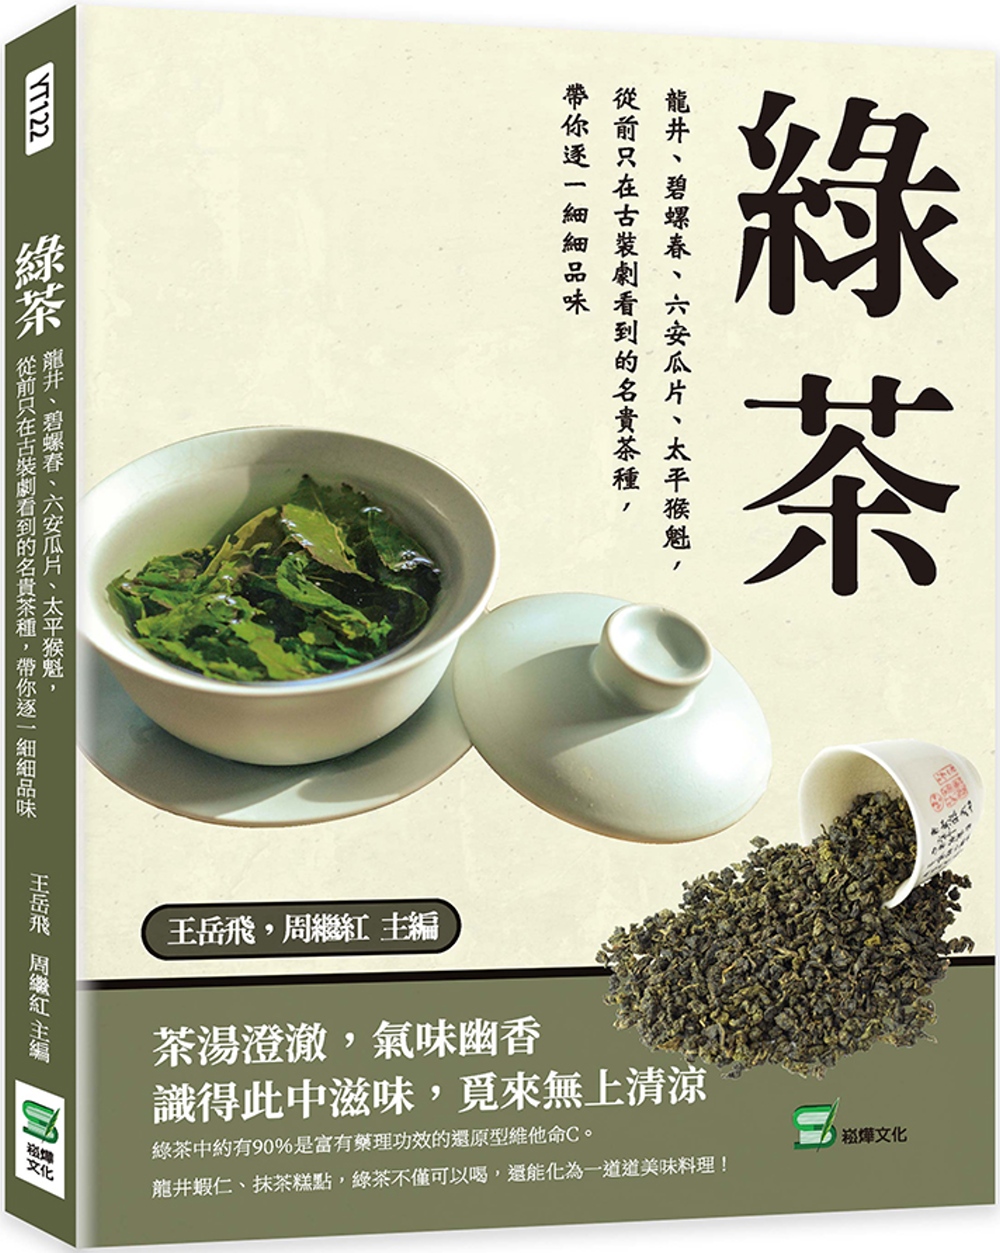 綠茶：龍井、碧螺春、六安瓜片、太平猴魁，從前只在古裝劇看到的名貴茶種，帶你逐一細細品味